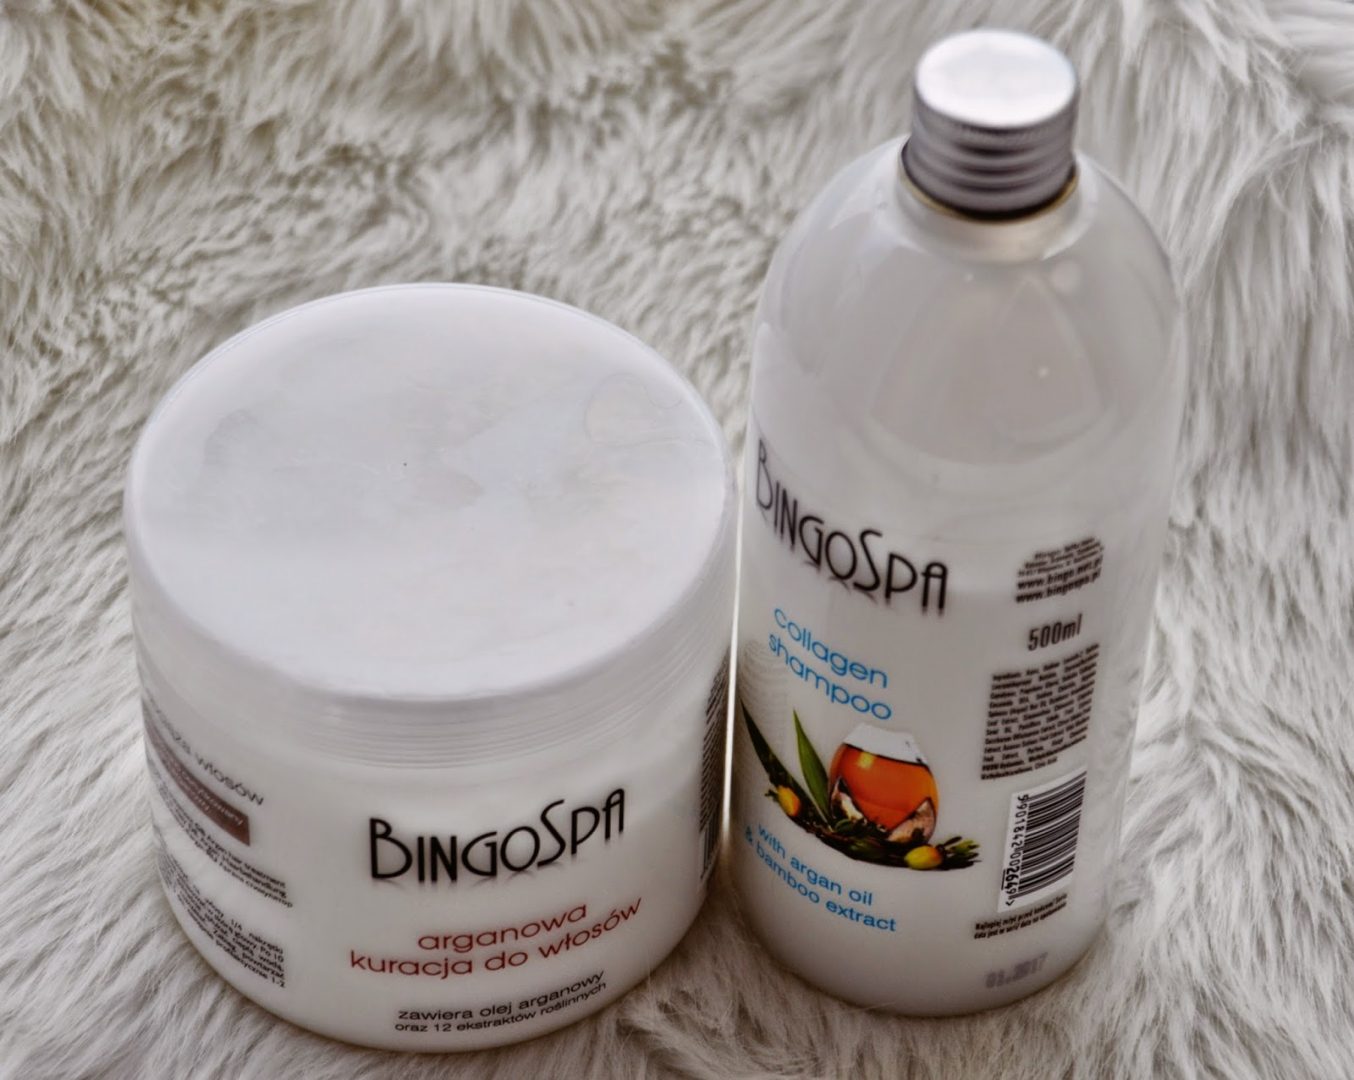 Recenzja BingoSpa: Kolagenowy szampon do włosów i arganowa kuracja do włosów.